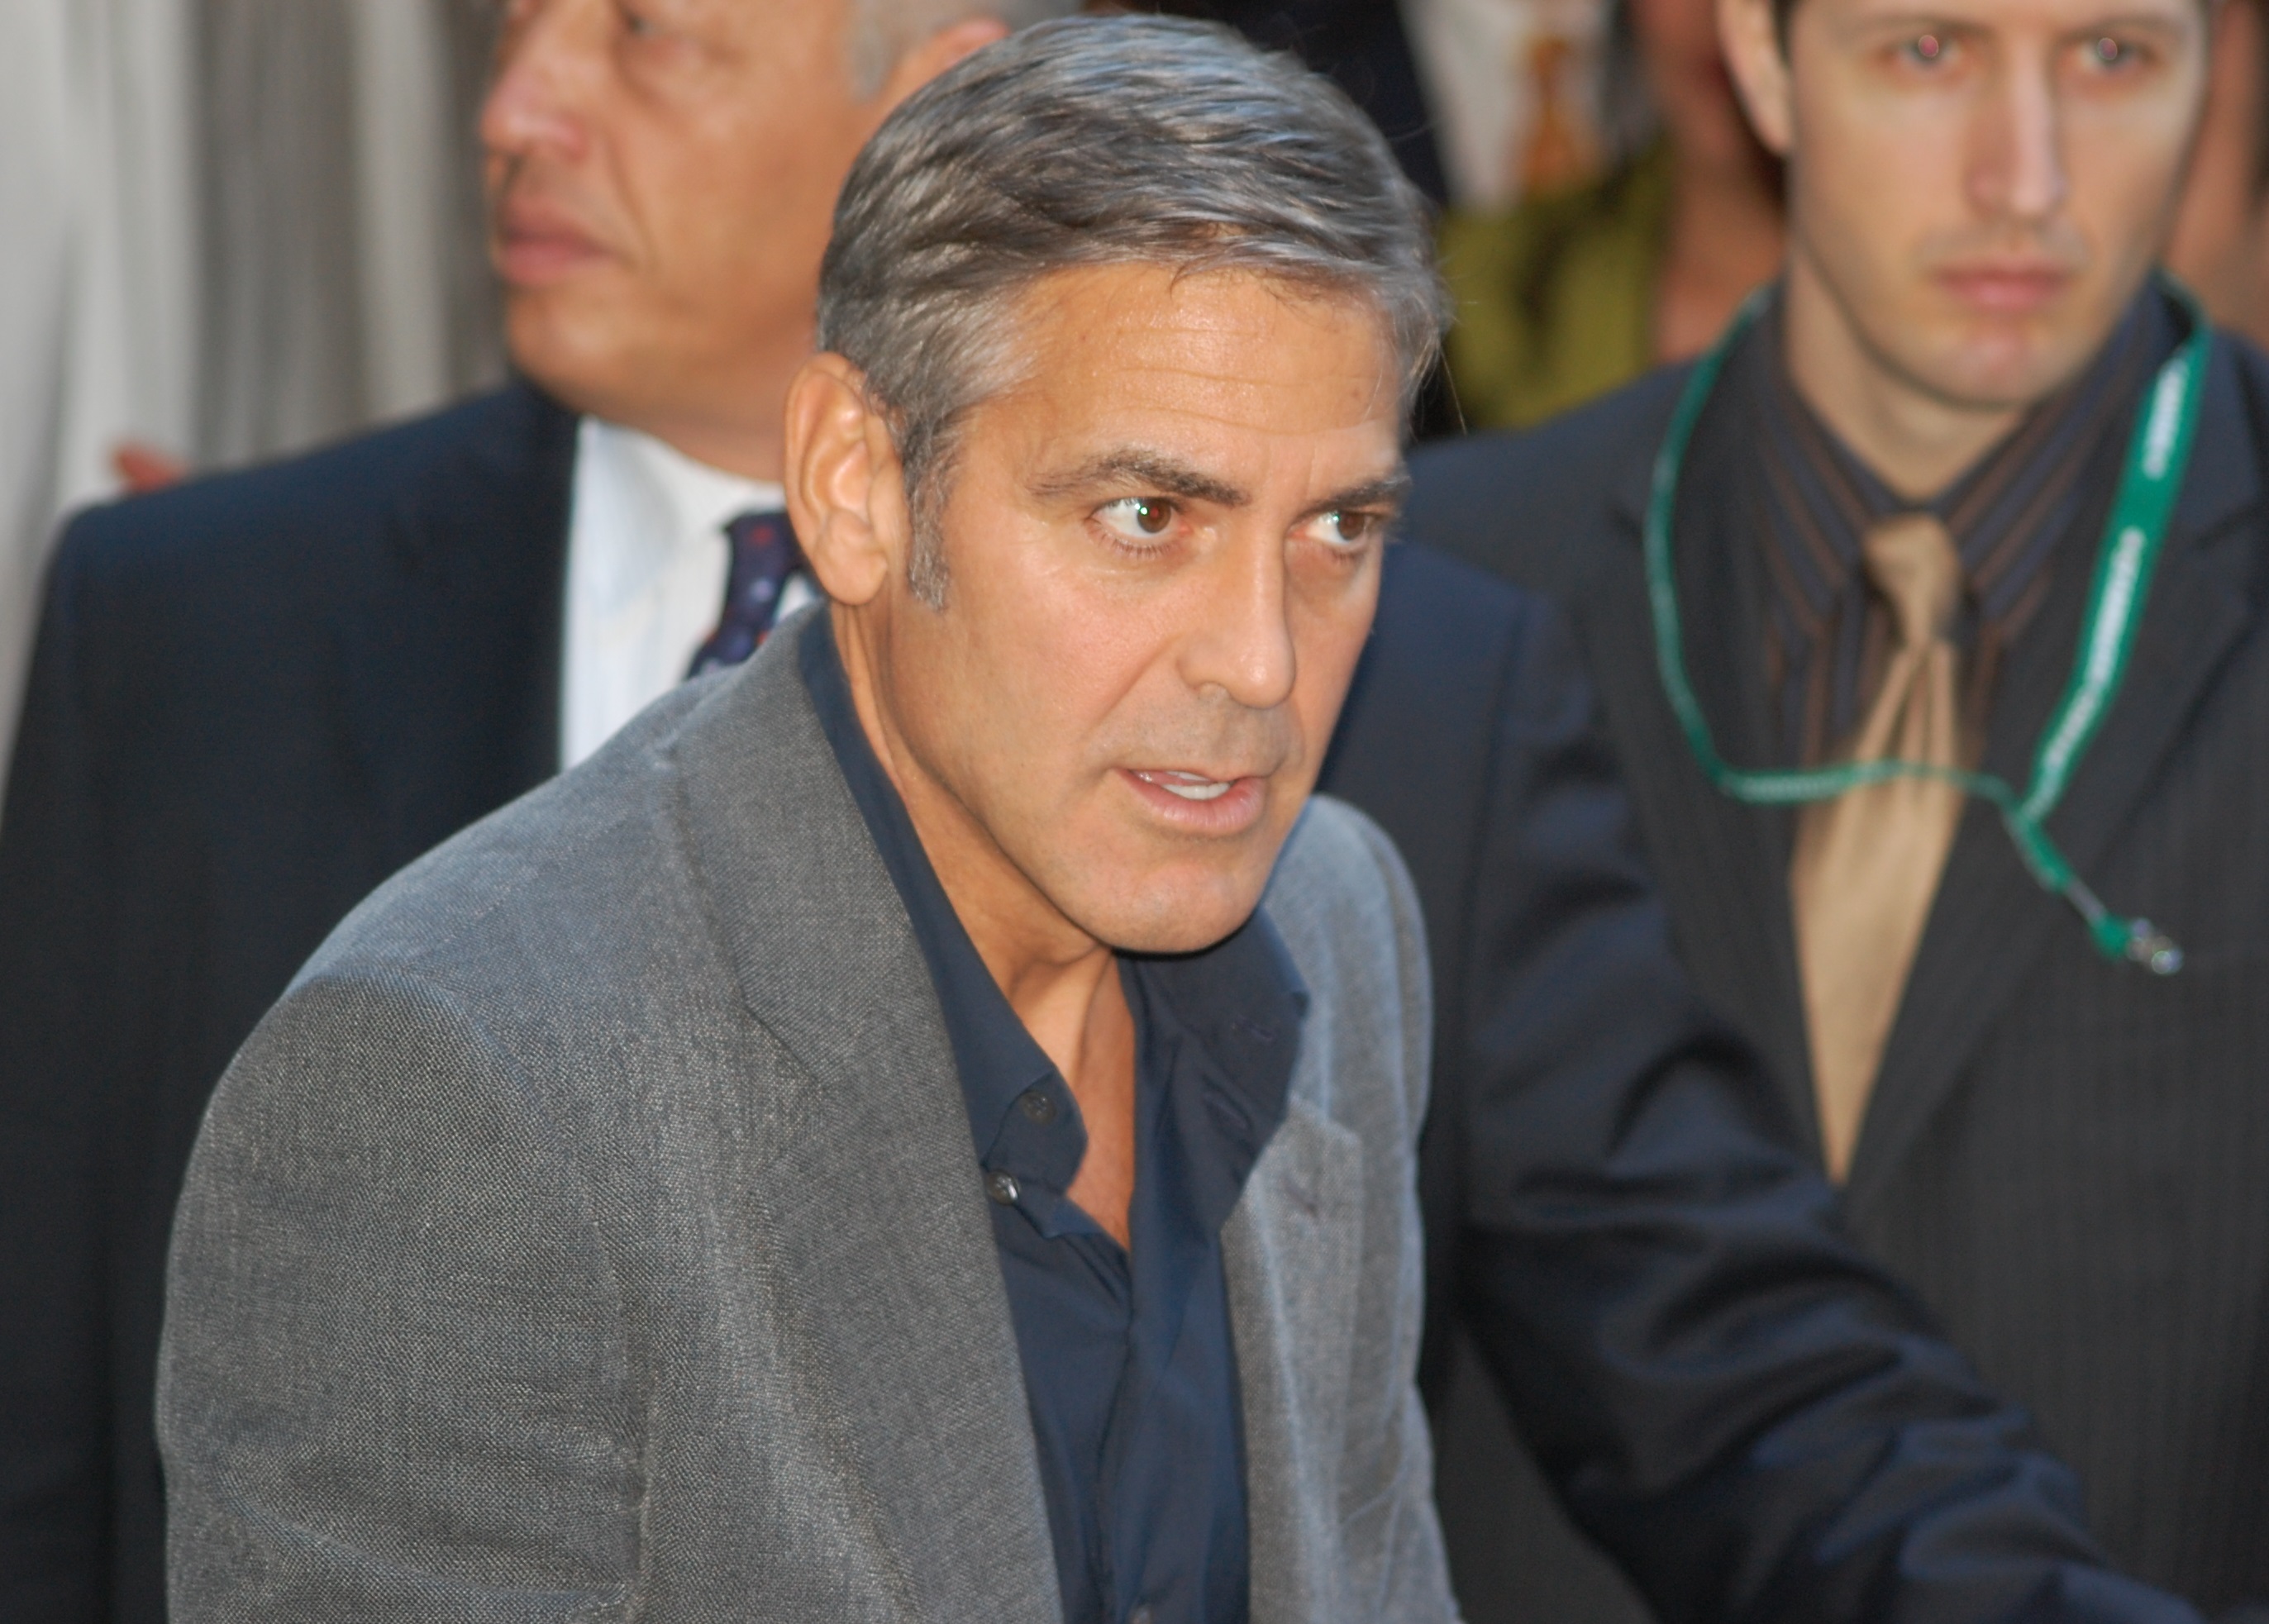 Dzhordzh Kluni utverzhdaet chto Amerika mozhet sdelat realnyie izmeneniya v Sudane - Джордж Клуни утверждает, что Америка может сделать реальные изменения в Судане